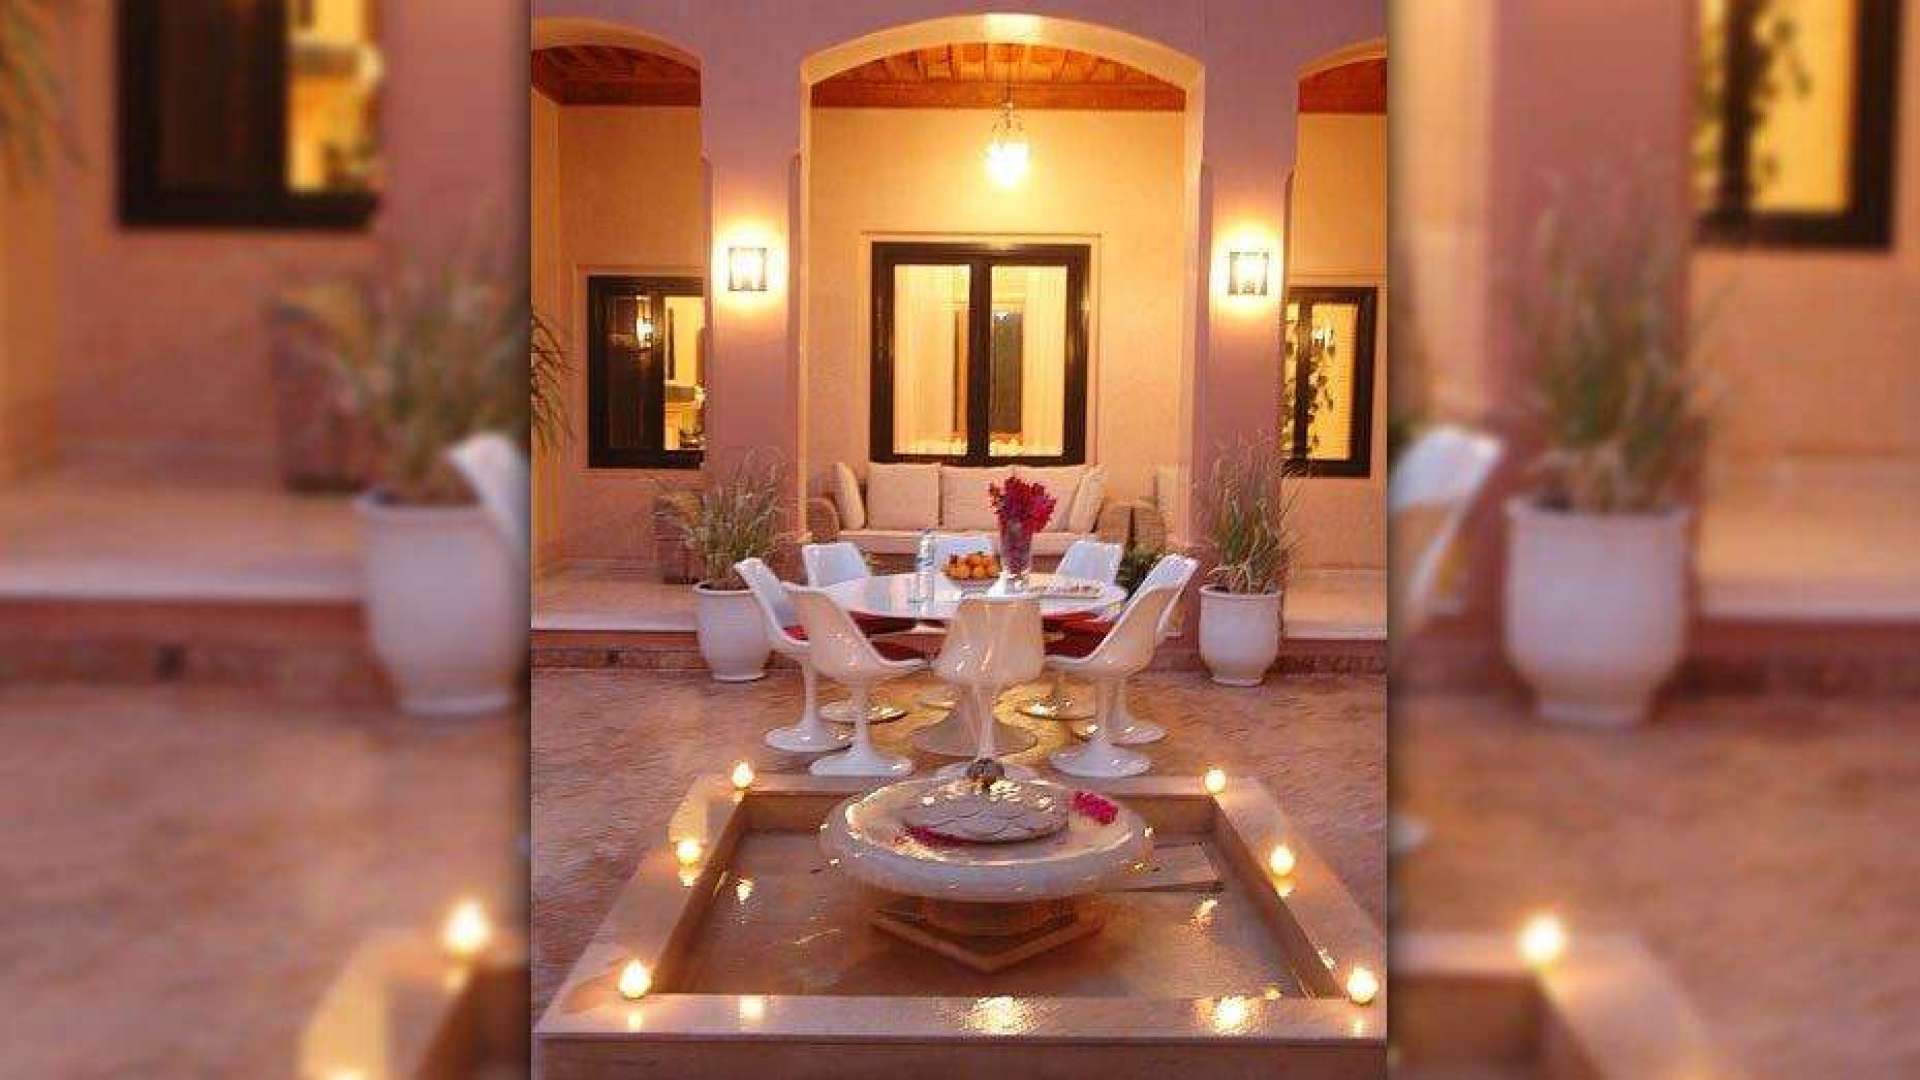 Location de vacances,Villa,Location à la semaine belle villa 4 suites dans le golf d'Amelkis ,Marrakech,Amelkis Golf Resort